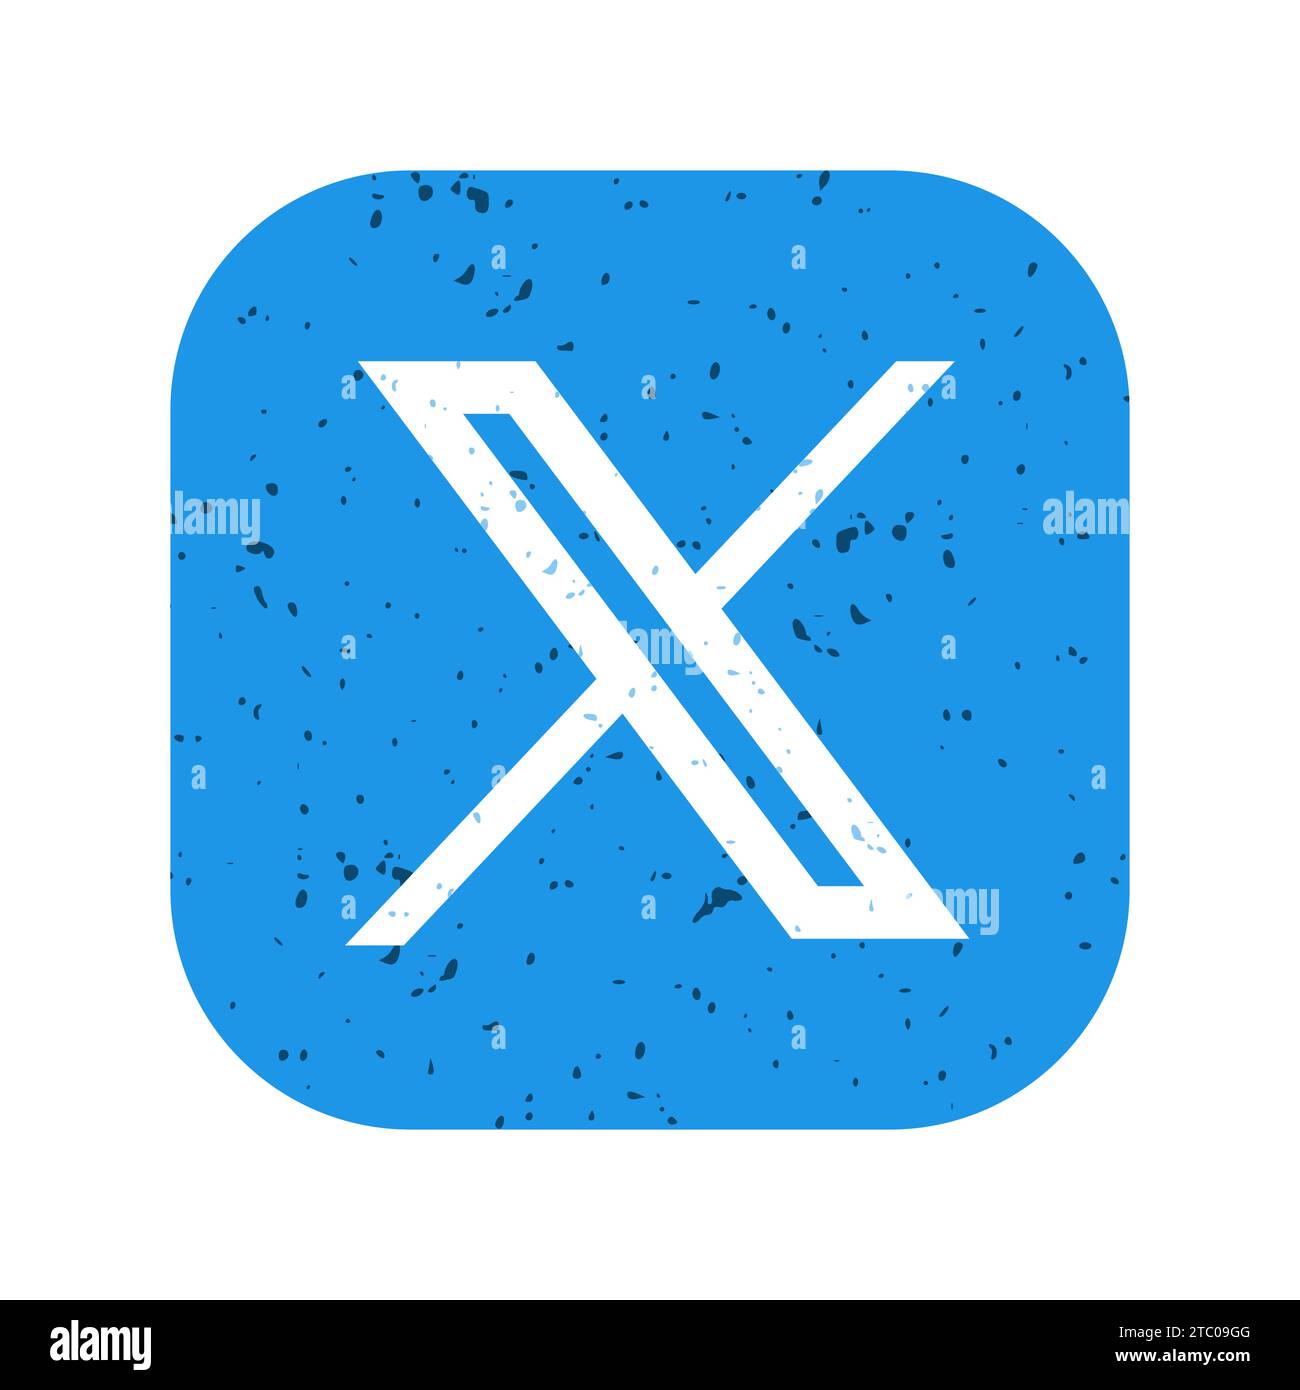 Twitter neues Logo, Logo-Marke Twitter mit X-förmigen Grafiken, weißes Zeichen auf blauem Hintergrund mit Textureffekt, Vektorillustration Stock Vektor